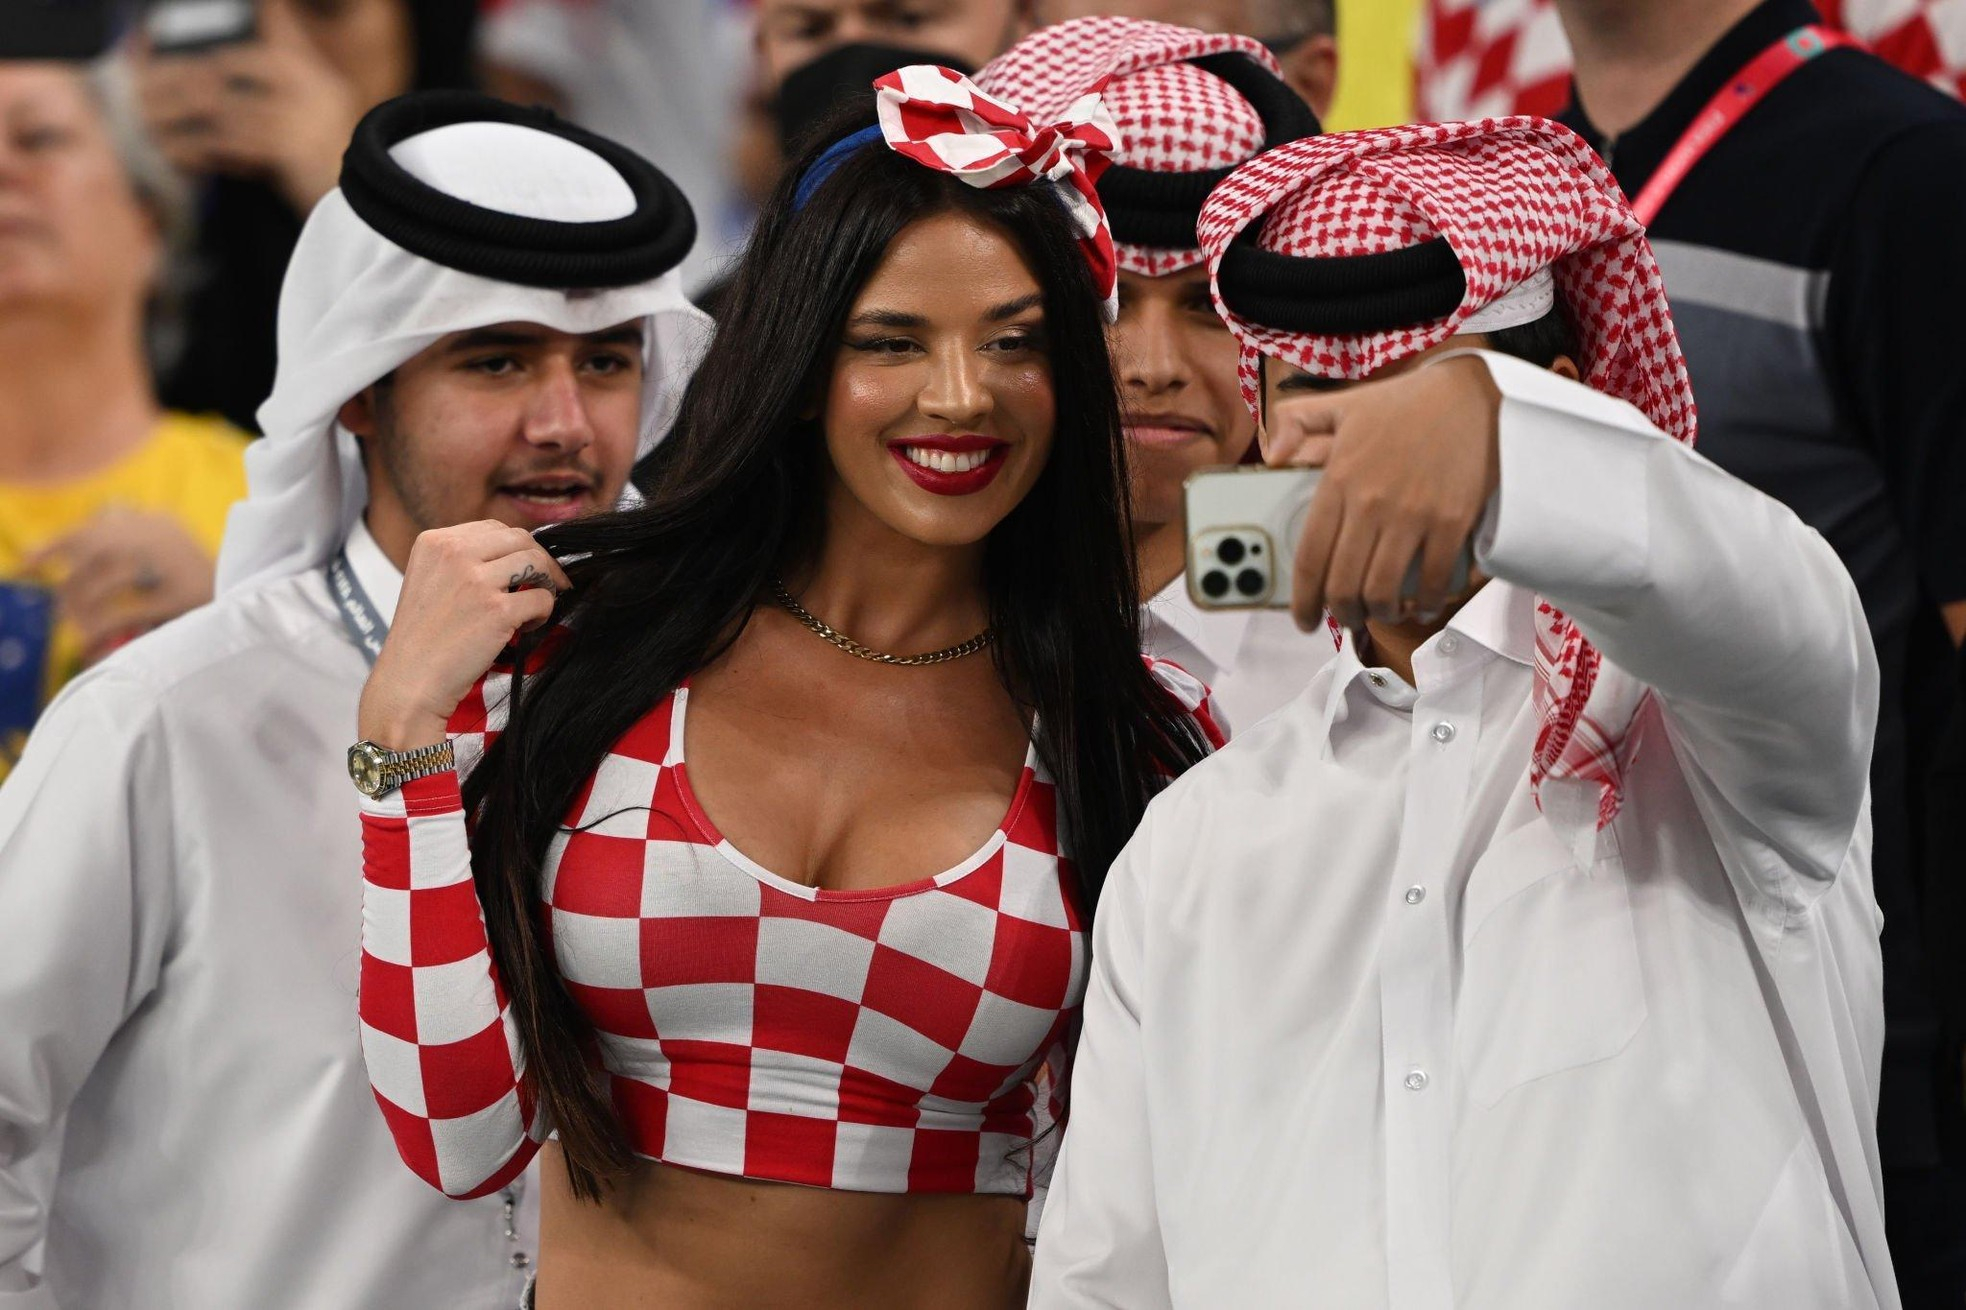 "Mỹ nhân" Croatia thách thức chủ nhà Qatar, mặc hở táo bạo ở World Cup